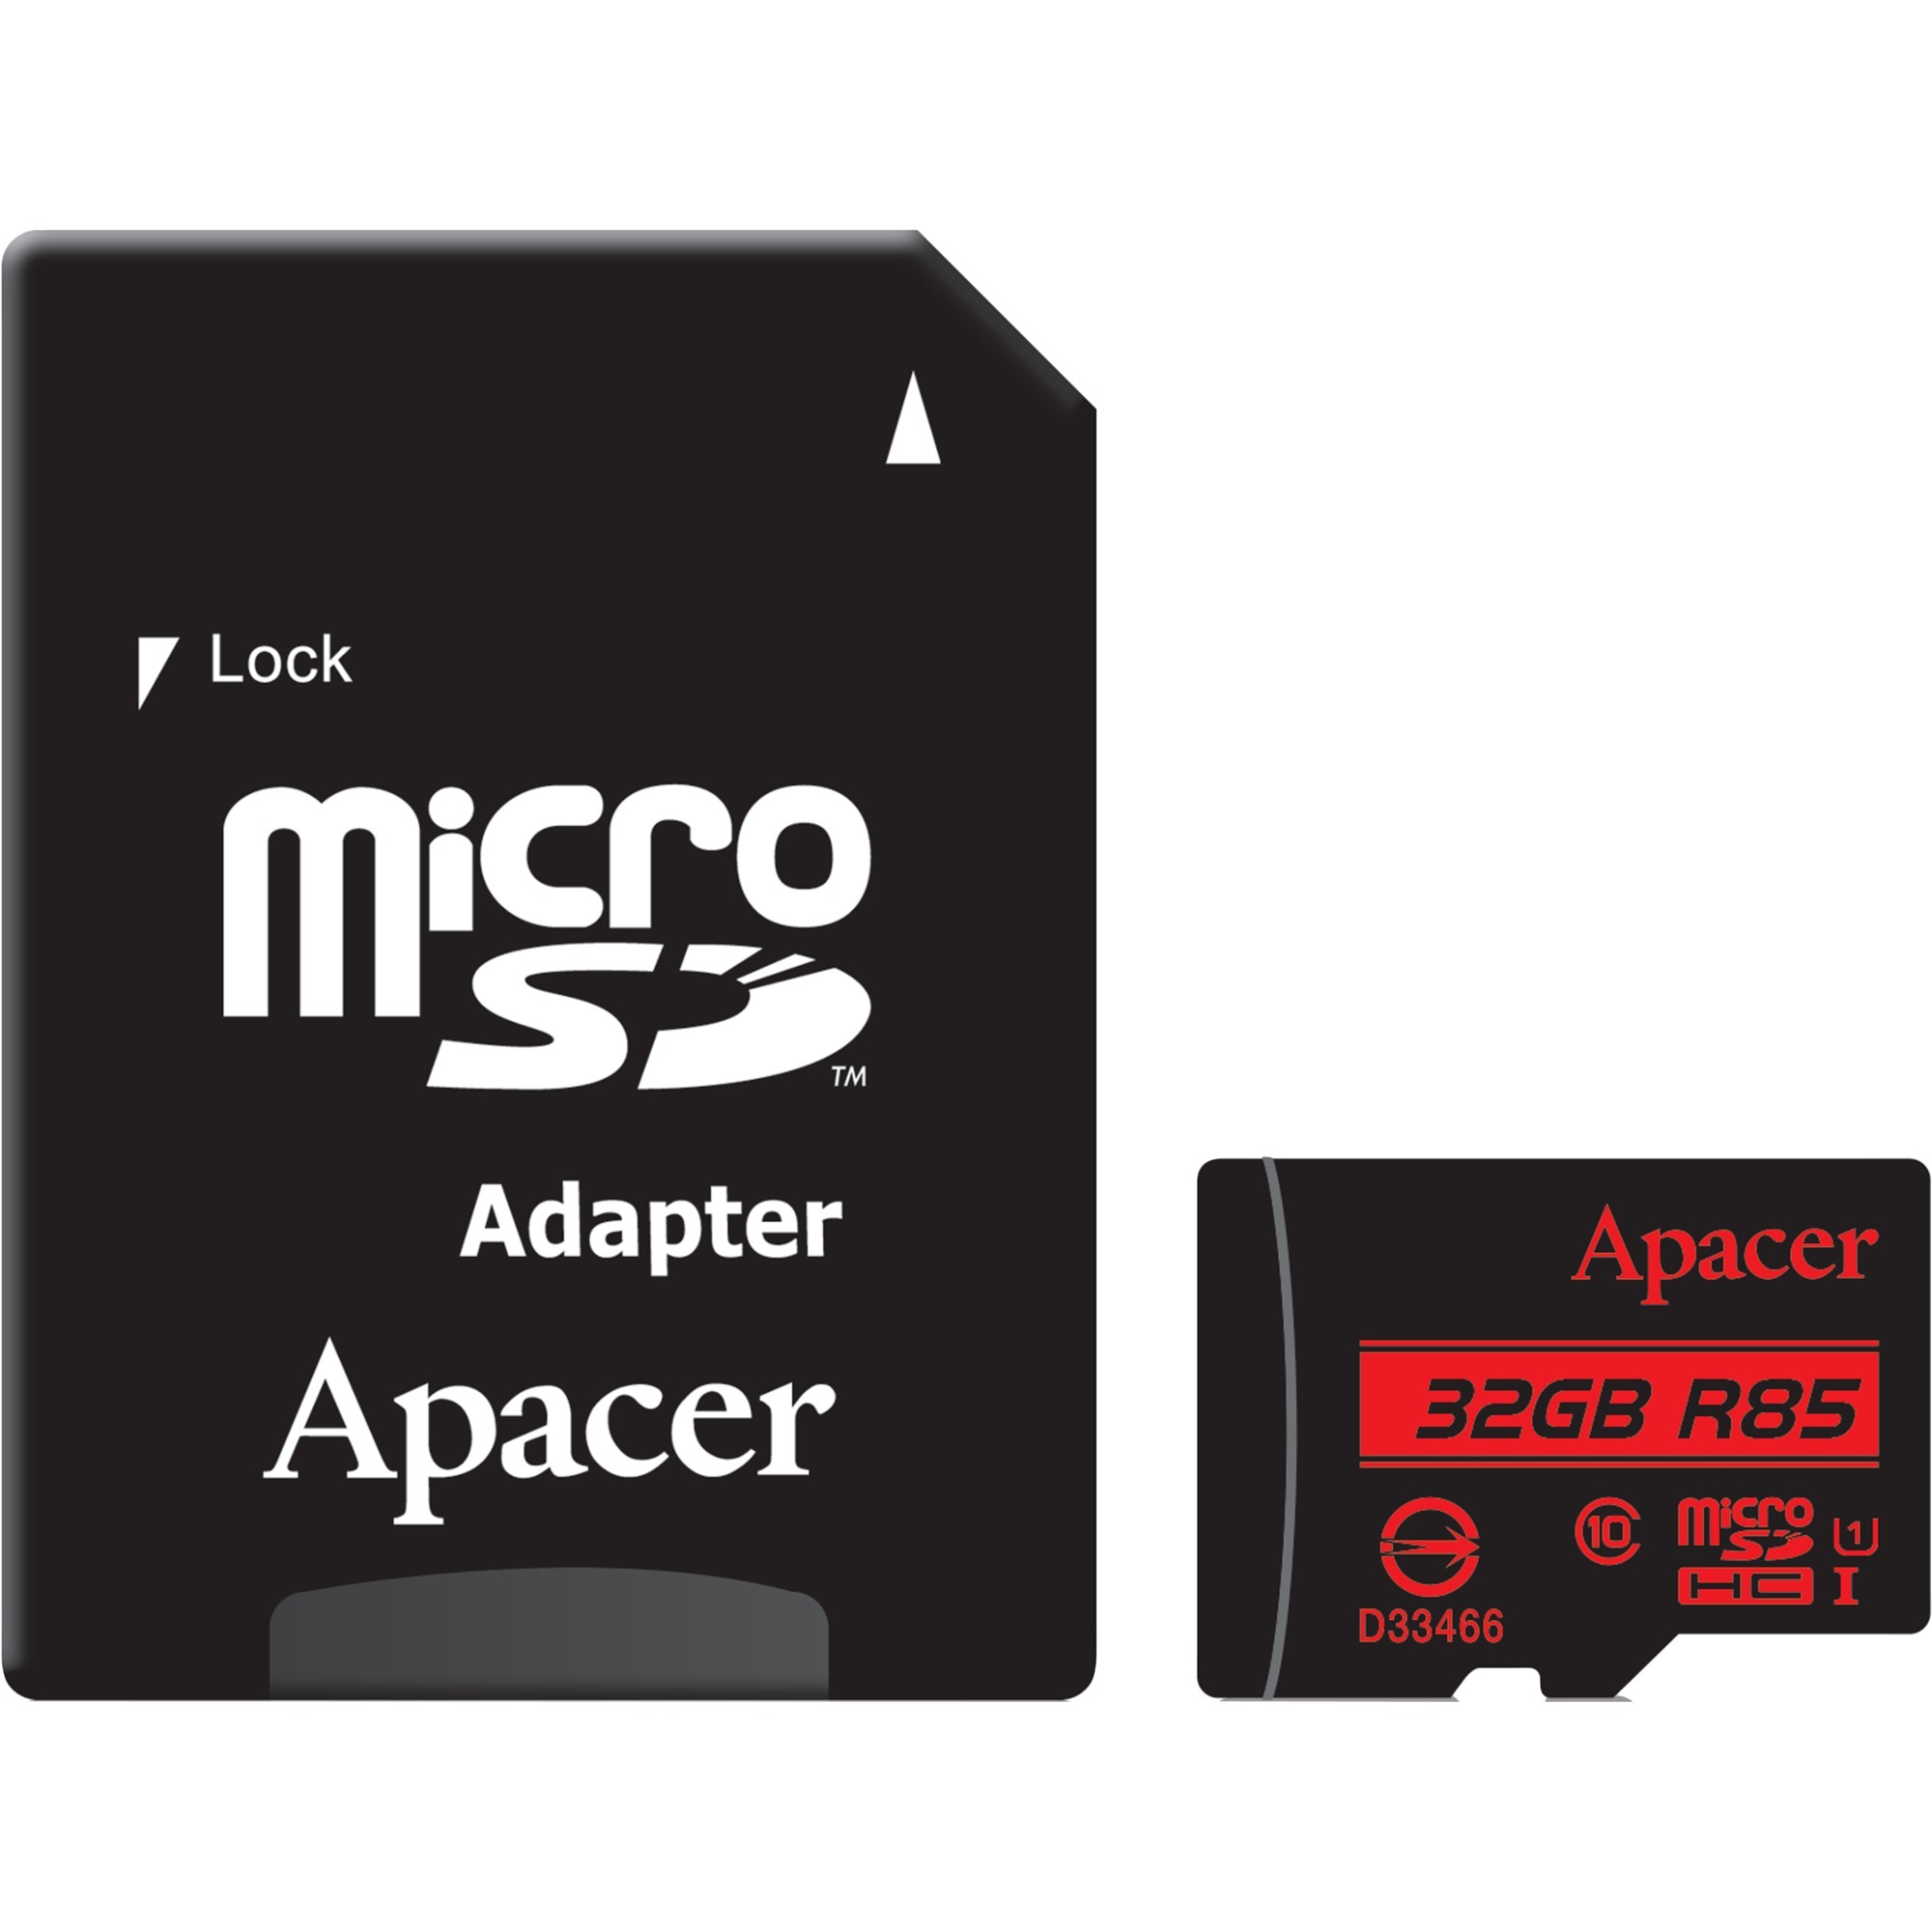 Image of Alternate - microSD 32 GB, Speicherkarte online einkaufen bei Alternate